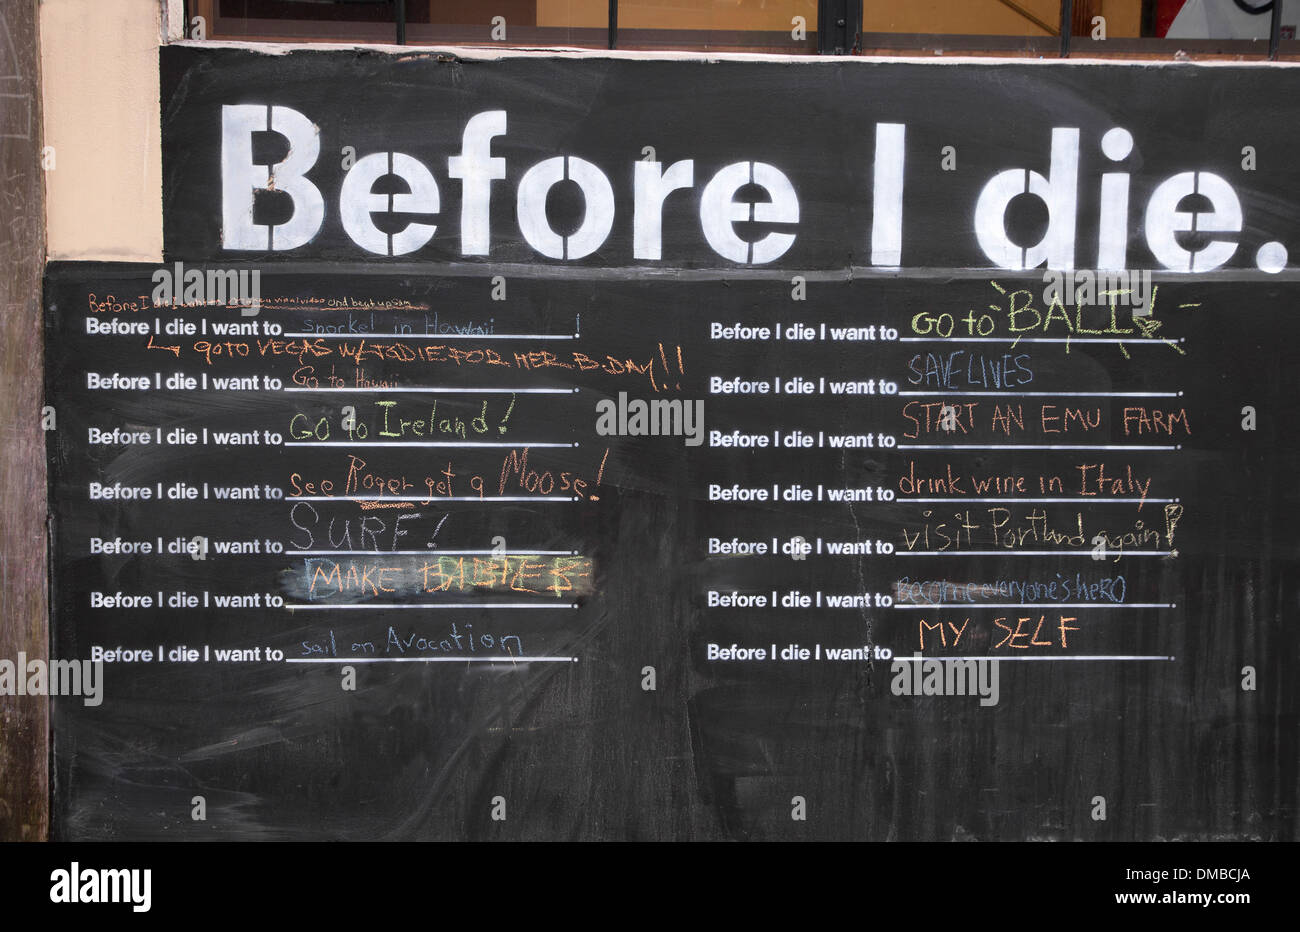 "Antes de que yo muera" la instalación de arte público en Portland, Maine. Foto de stock